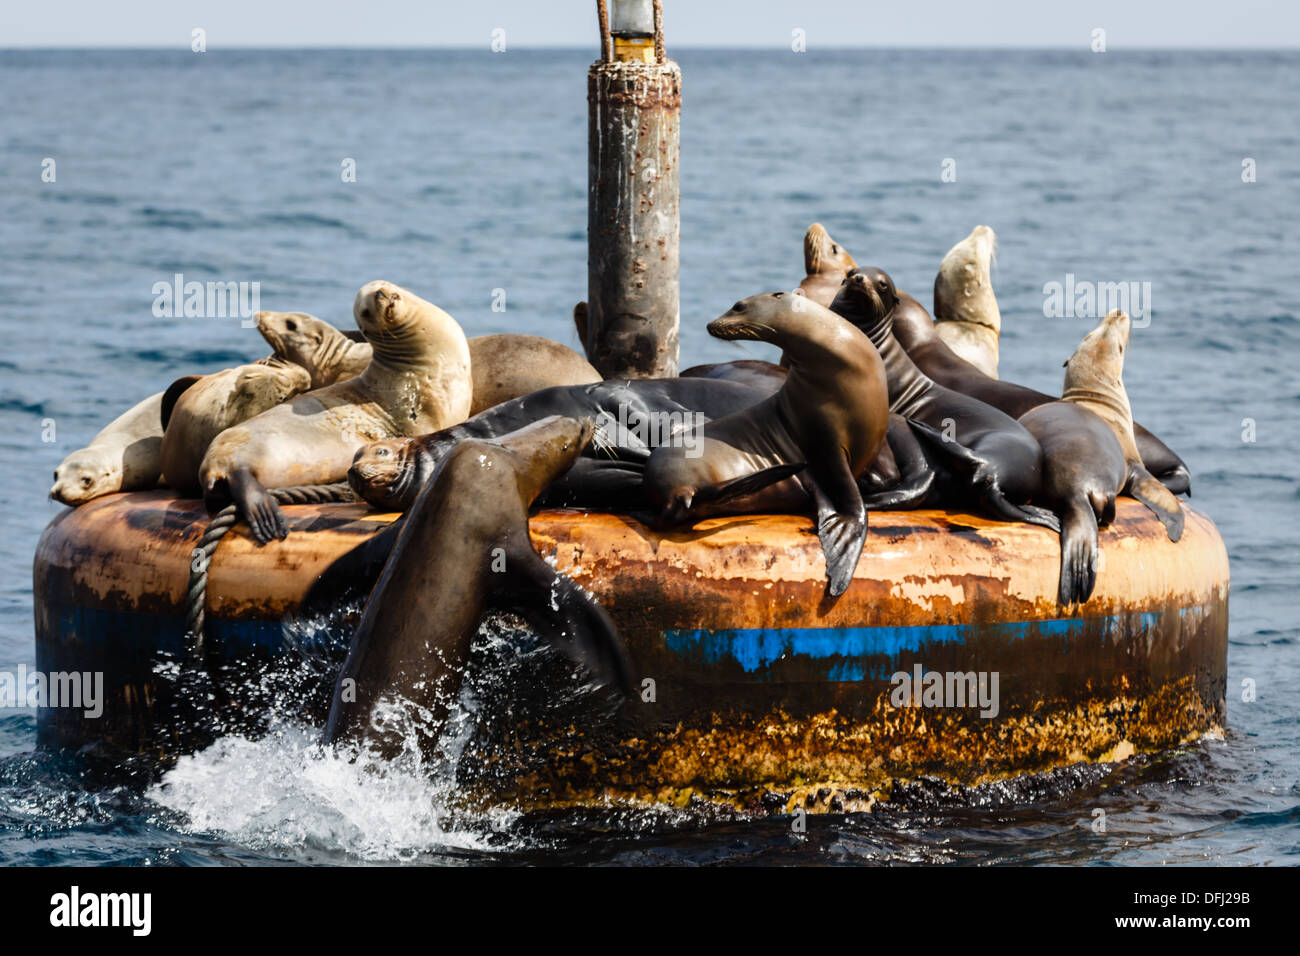 Les lions de mer empilés sur le marqueur de canal encouragent les nouvelles arrivées Banque D'Images